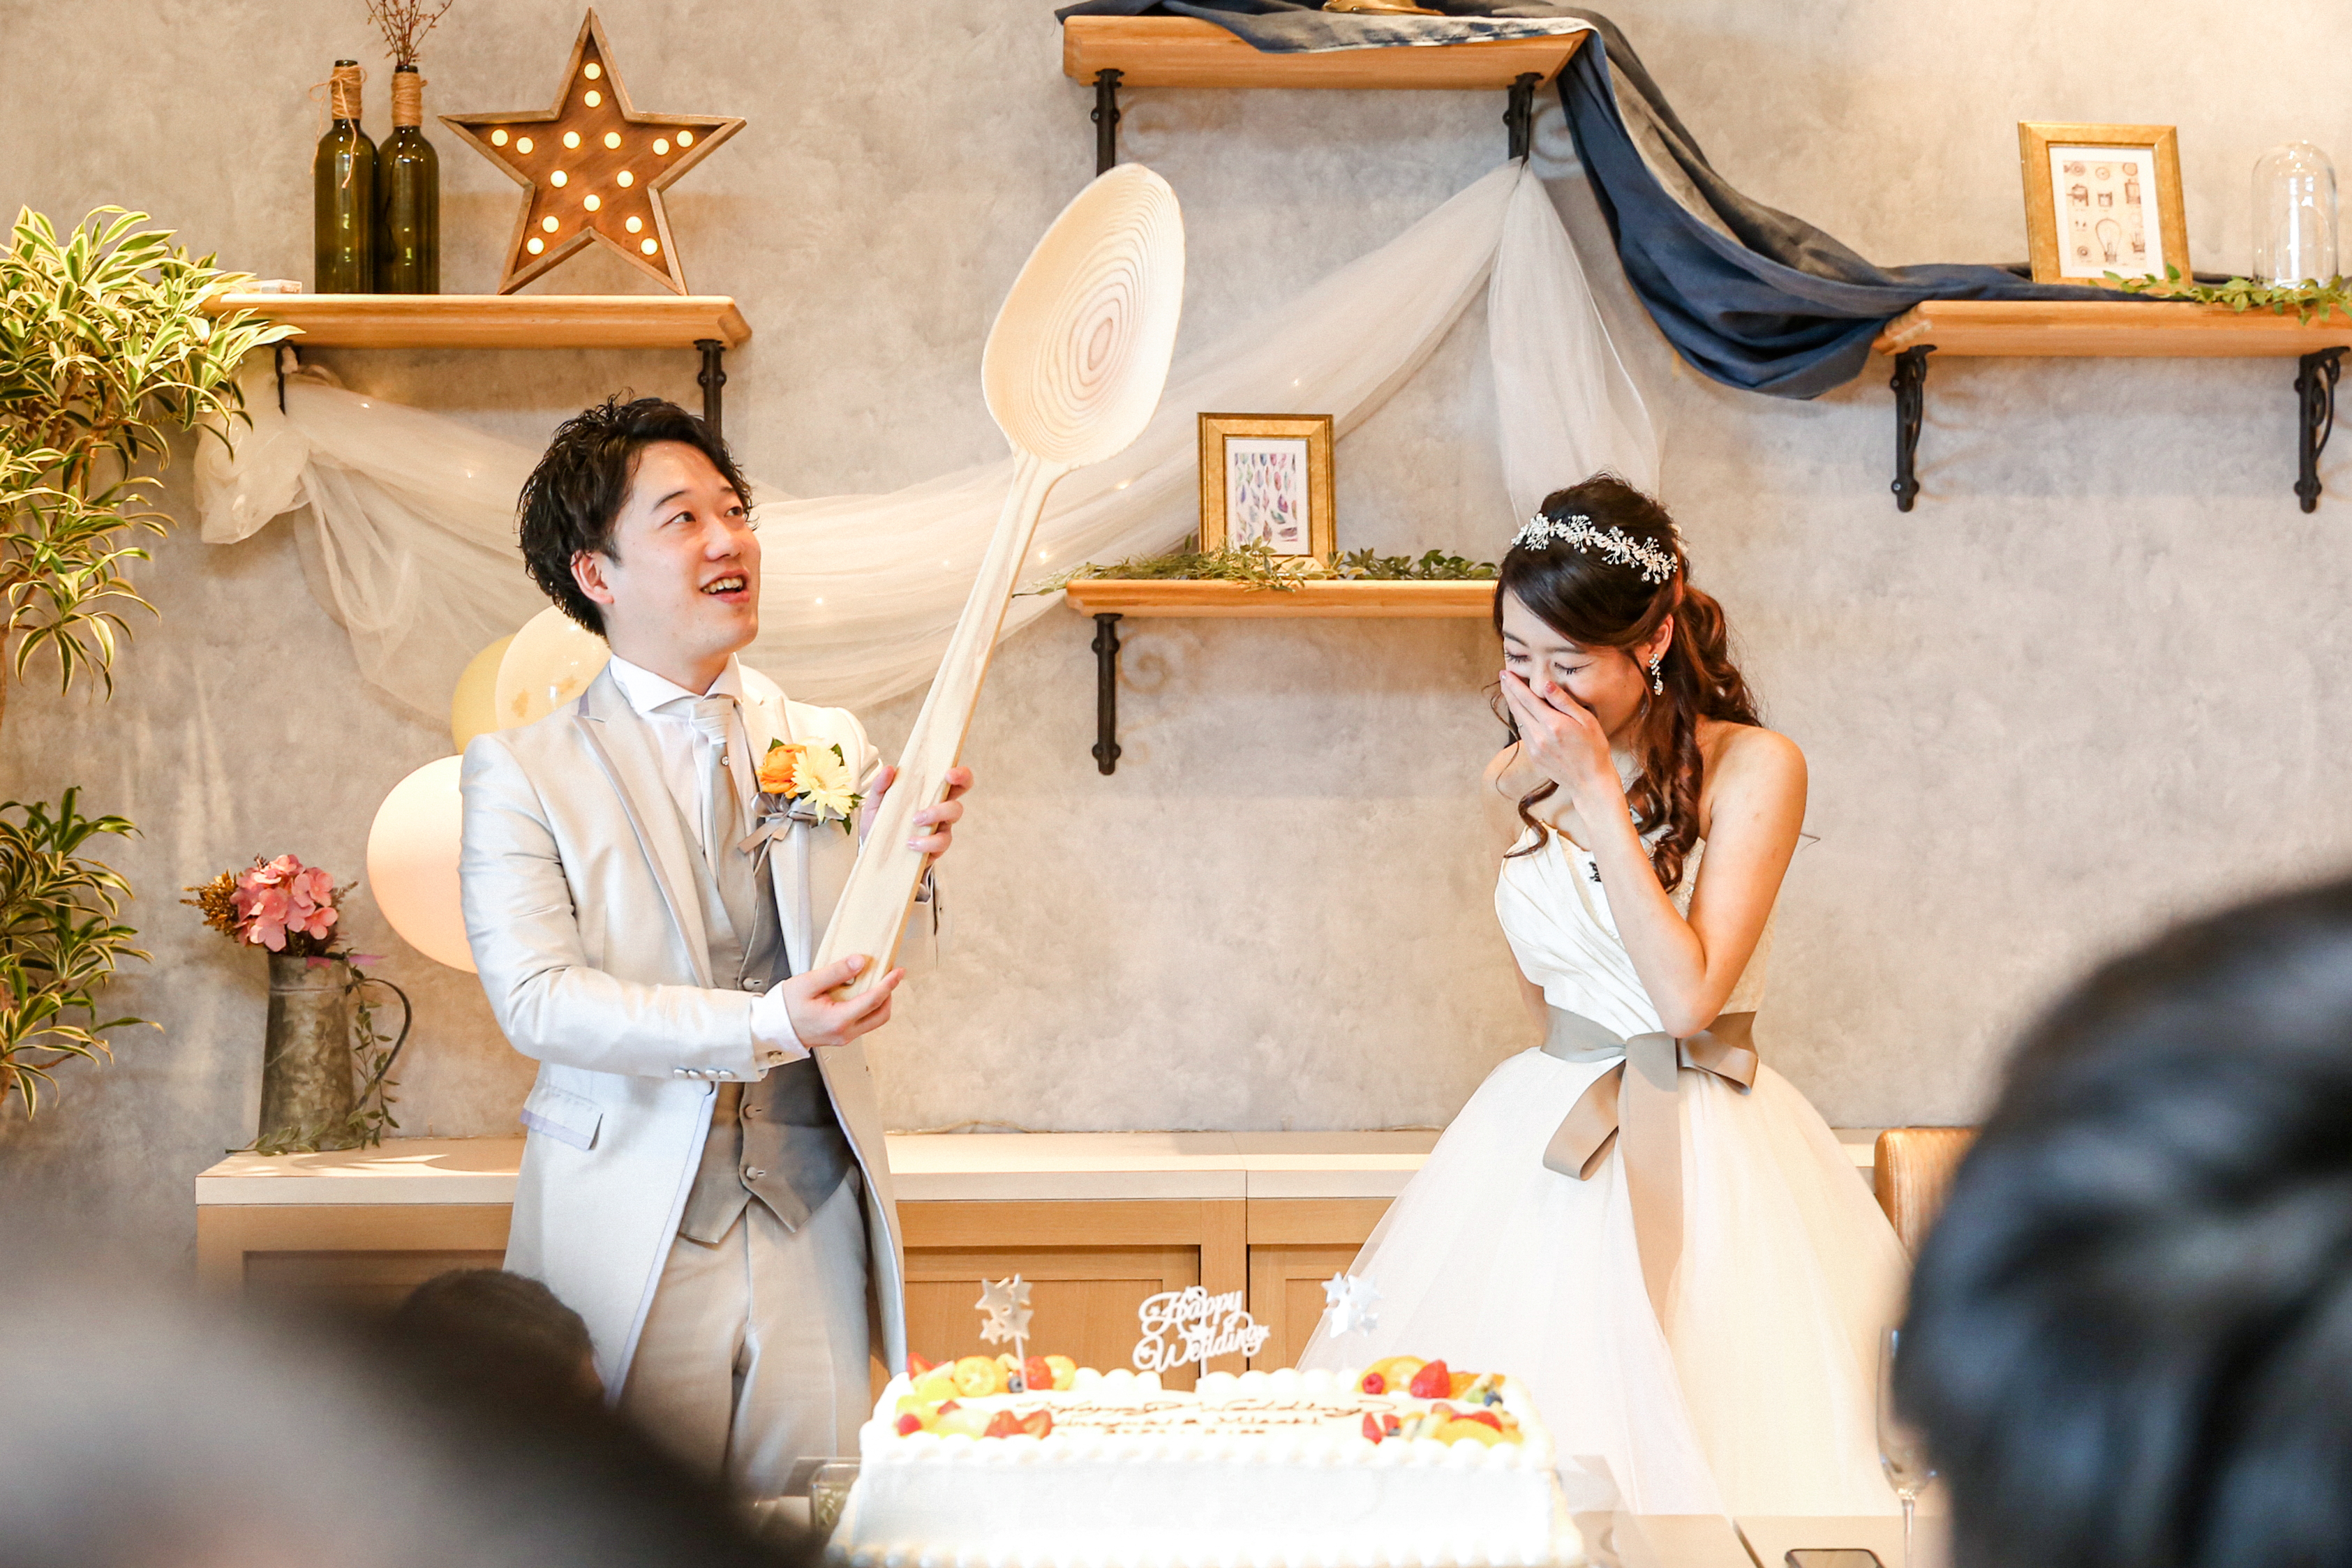 結婚式のウェディングケーキ演出 ファーストバイトの豆知識や 幸せの足跡 について 結婚式 写真 前撮り コマーシャルフォト ムービーなら神奈川県横浜市のインプルーブ